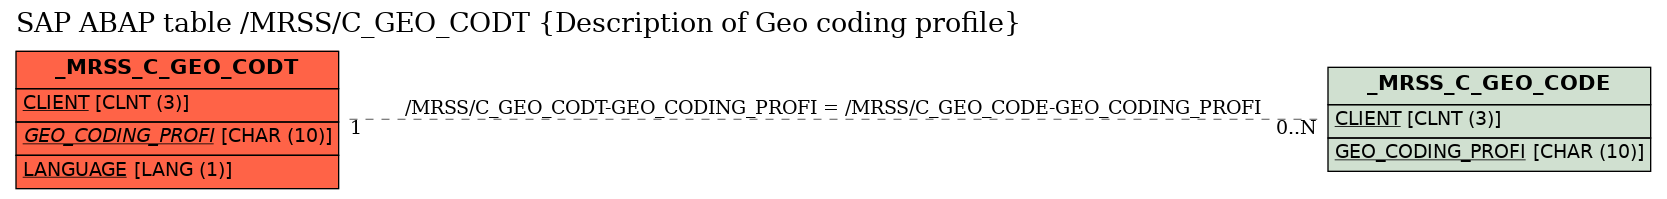 E-R Diagram for table /MRSS/C_GEO_CODT (Description of Geo coding profile)